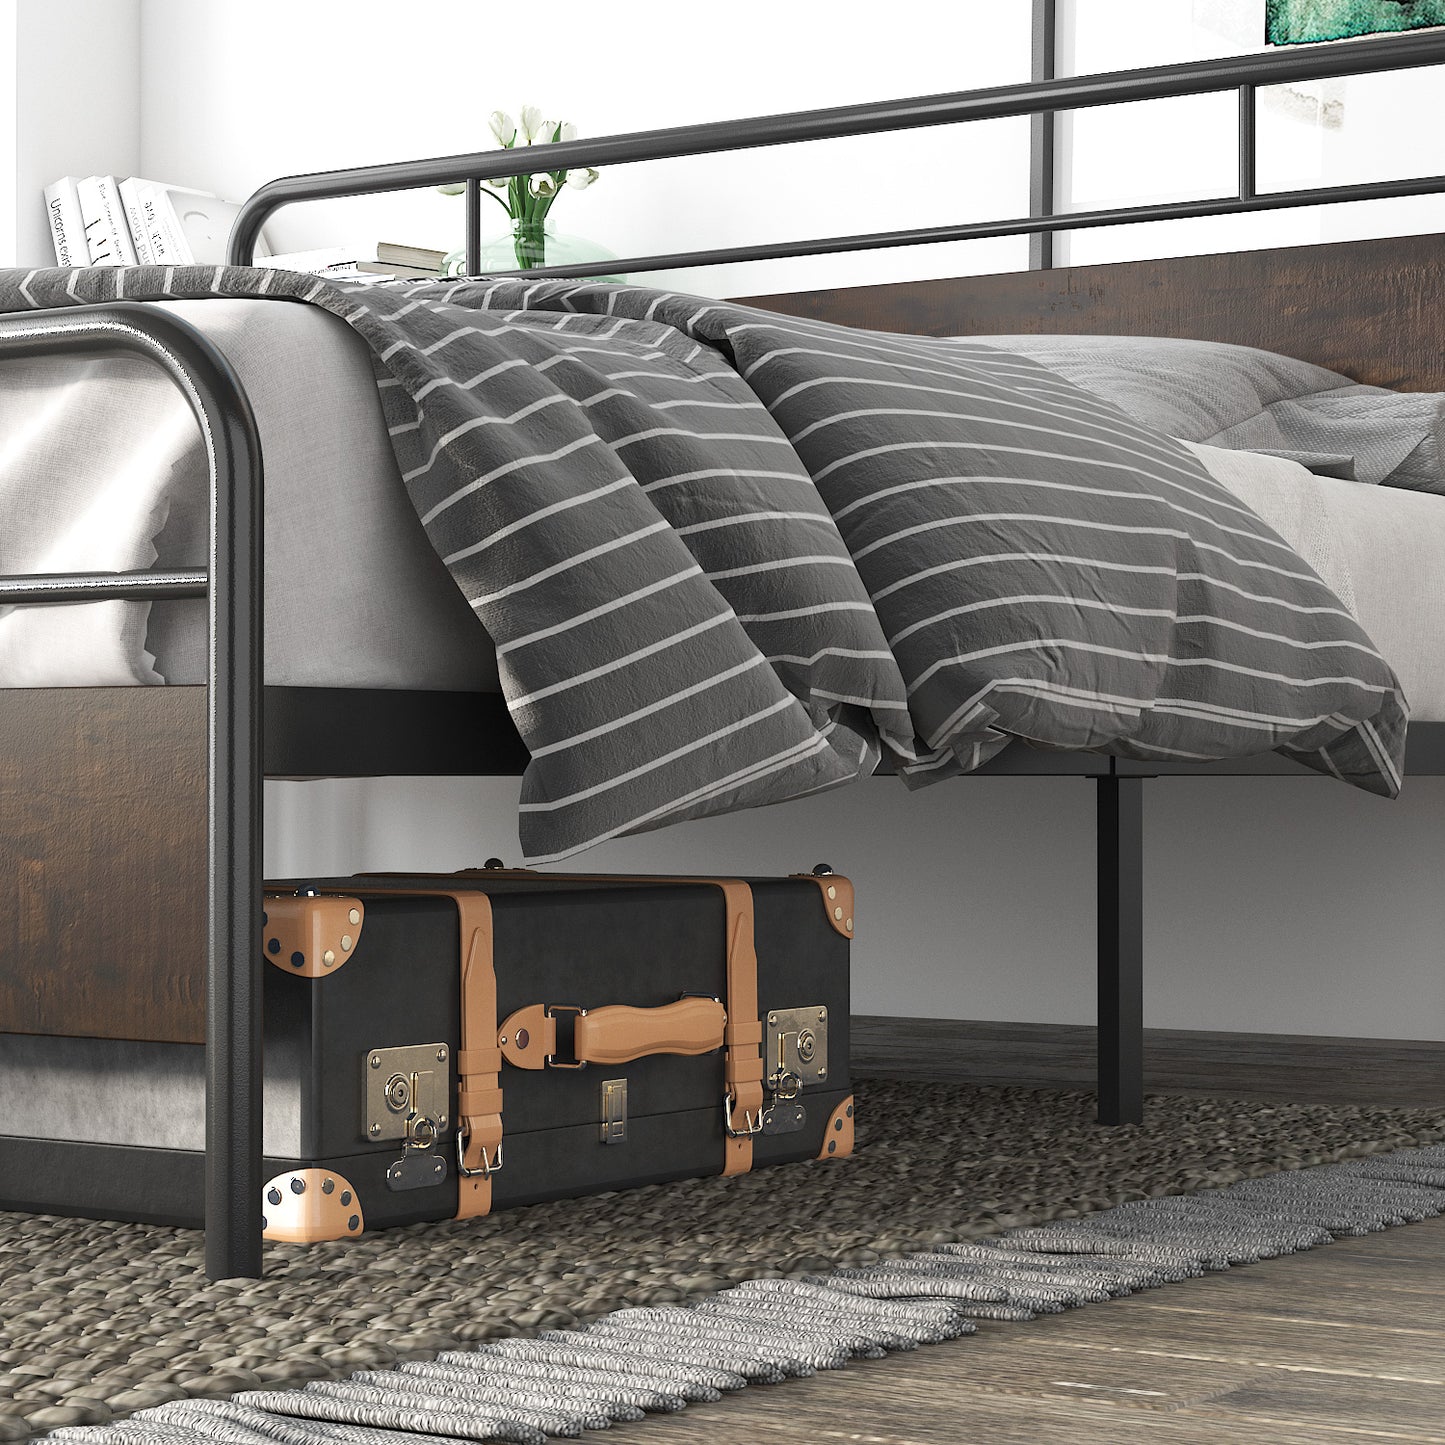 Allewie Sanders Bed with Wooden Headboard, Vintage Metal Platform Bed